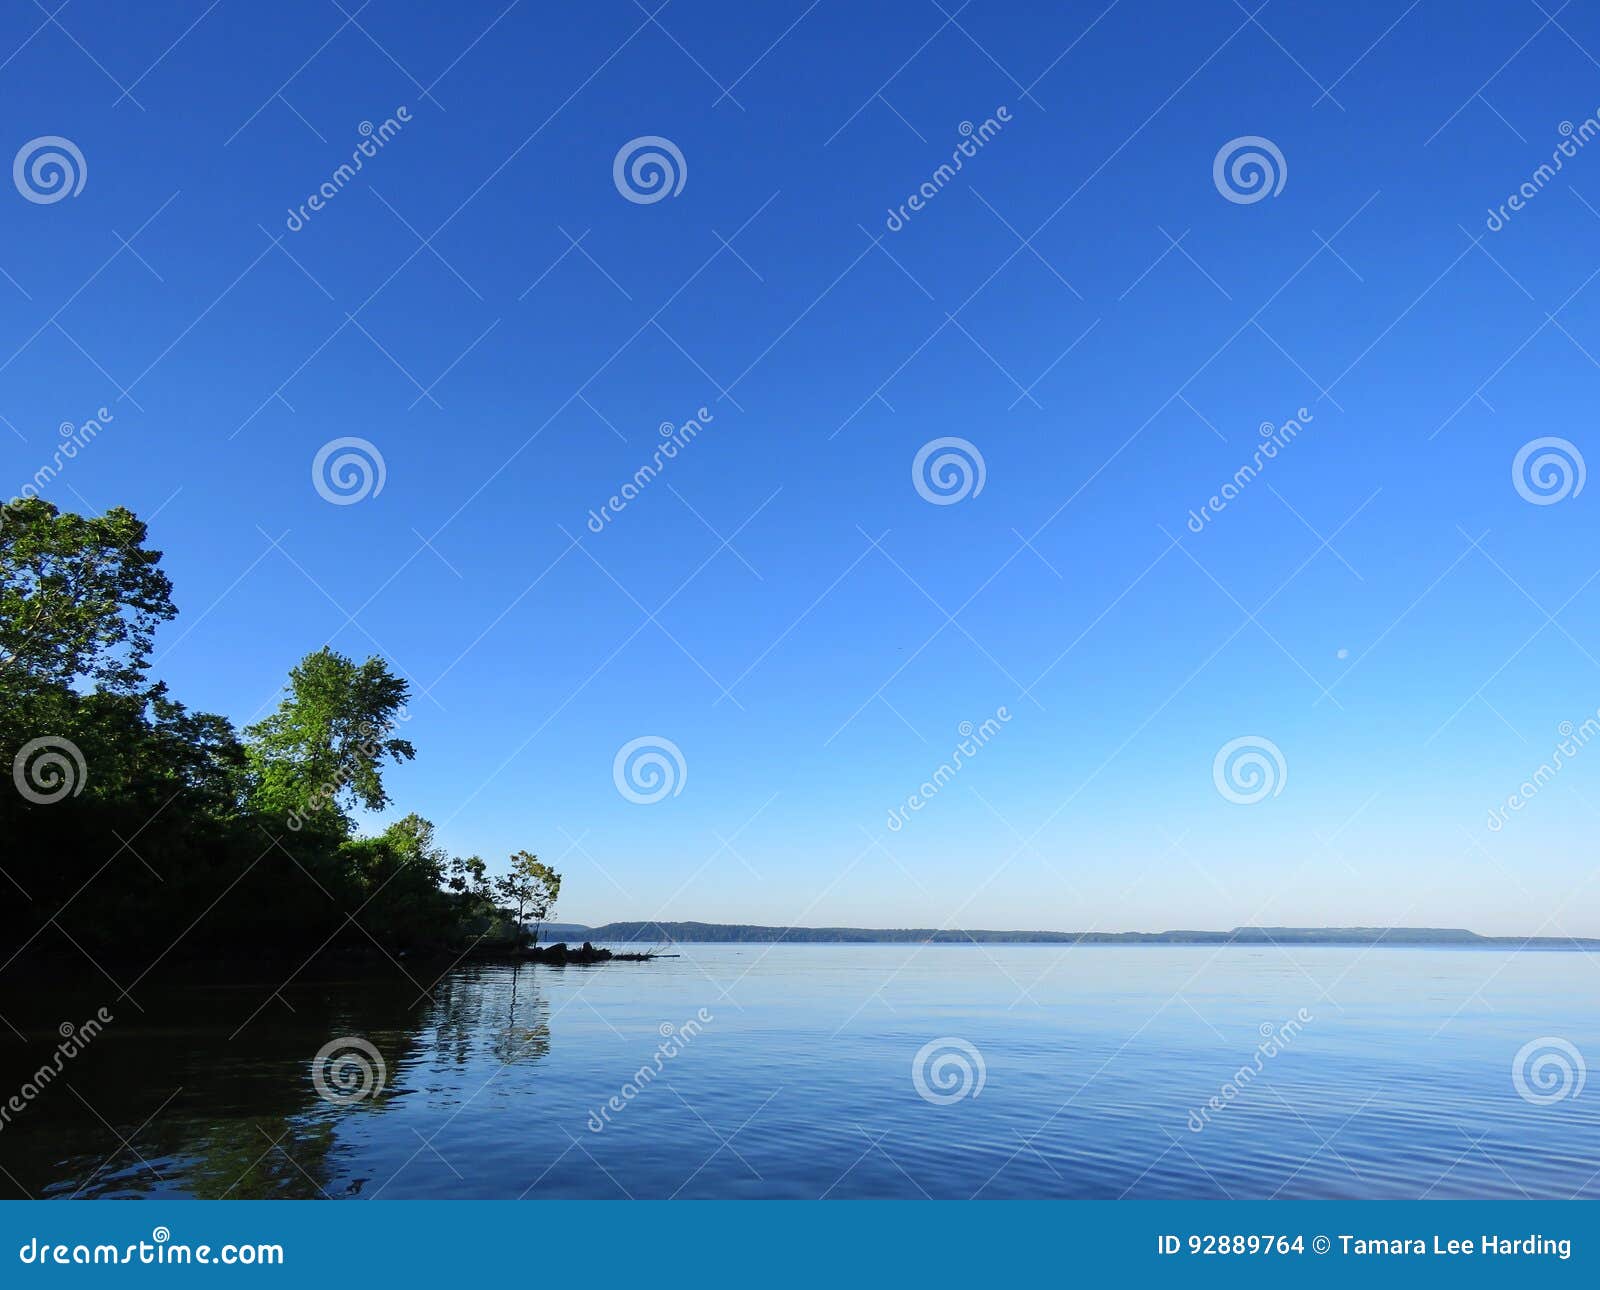 平安的早晨 湖在黎明 与树的镇静湖背景库存照片 图片包括有和平 人们 蓝色 没人 黎明 俄克拉何马